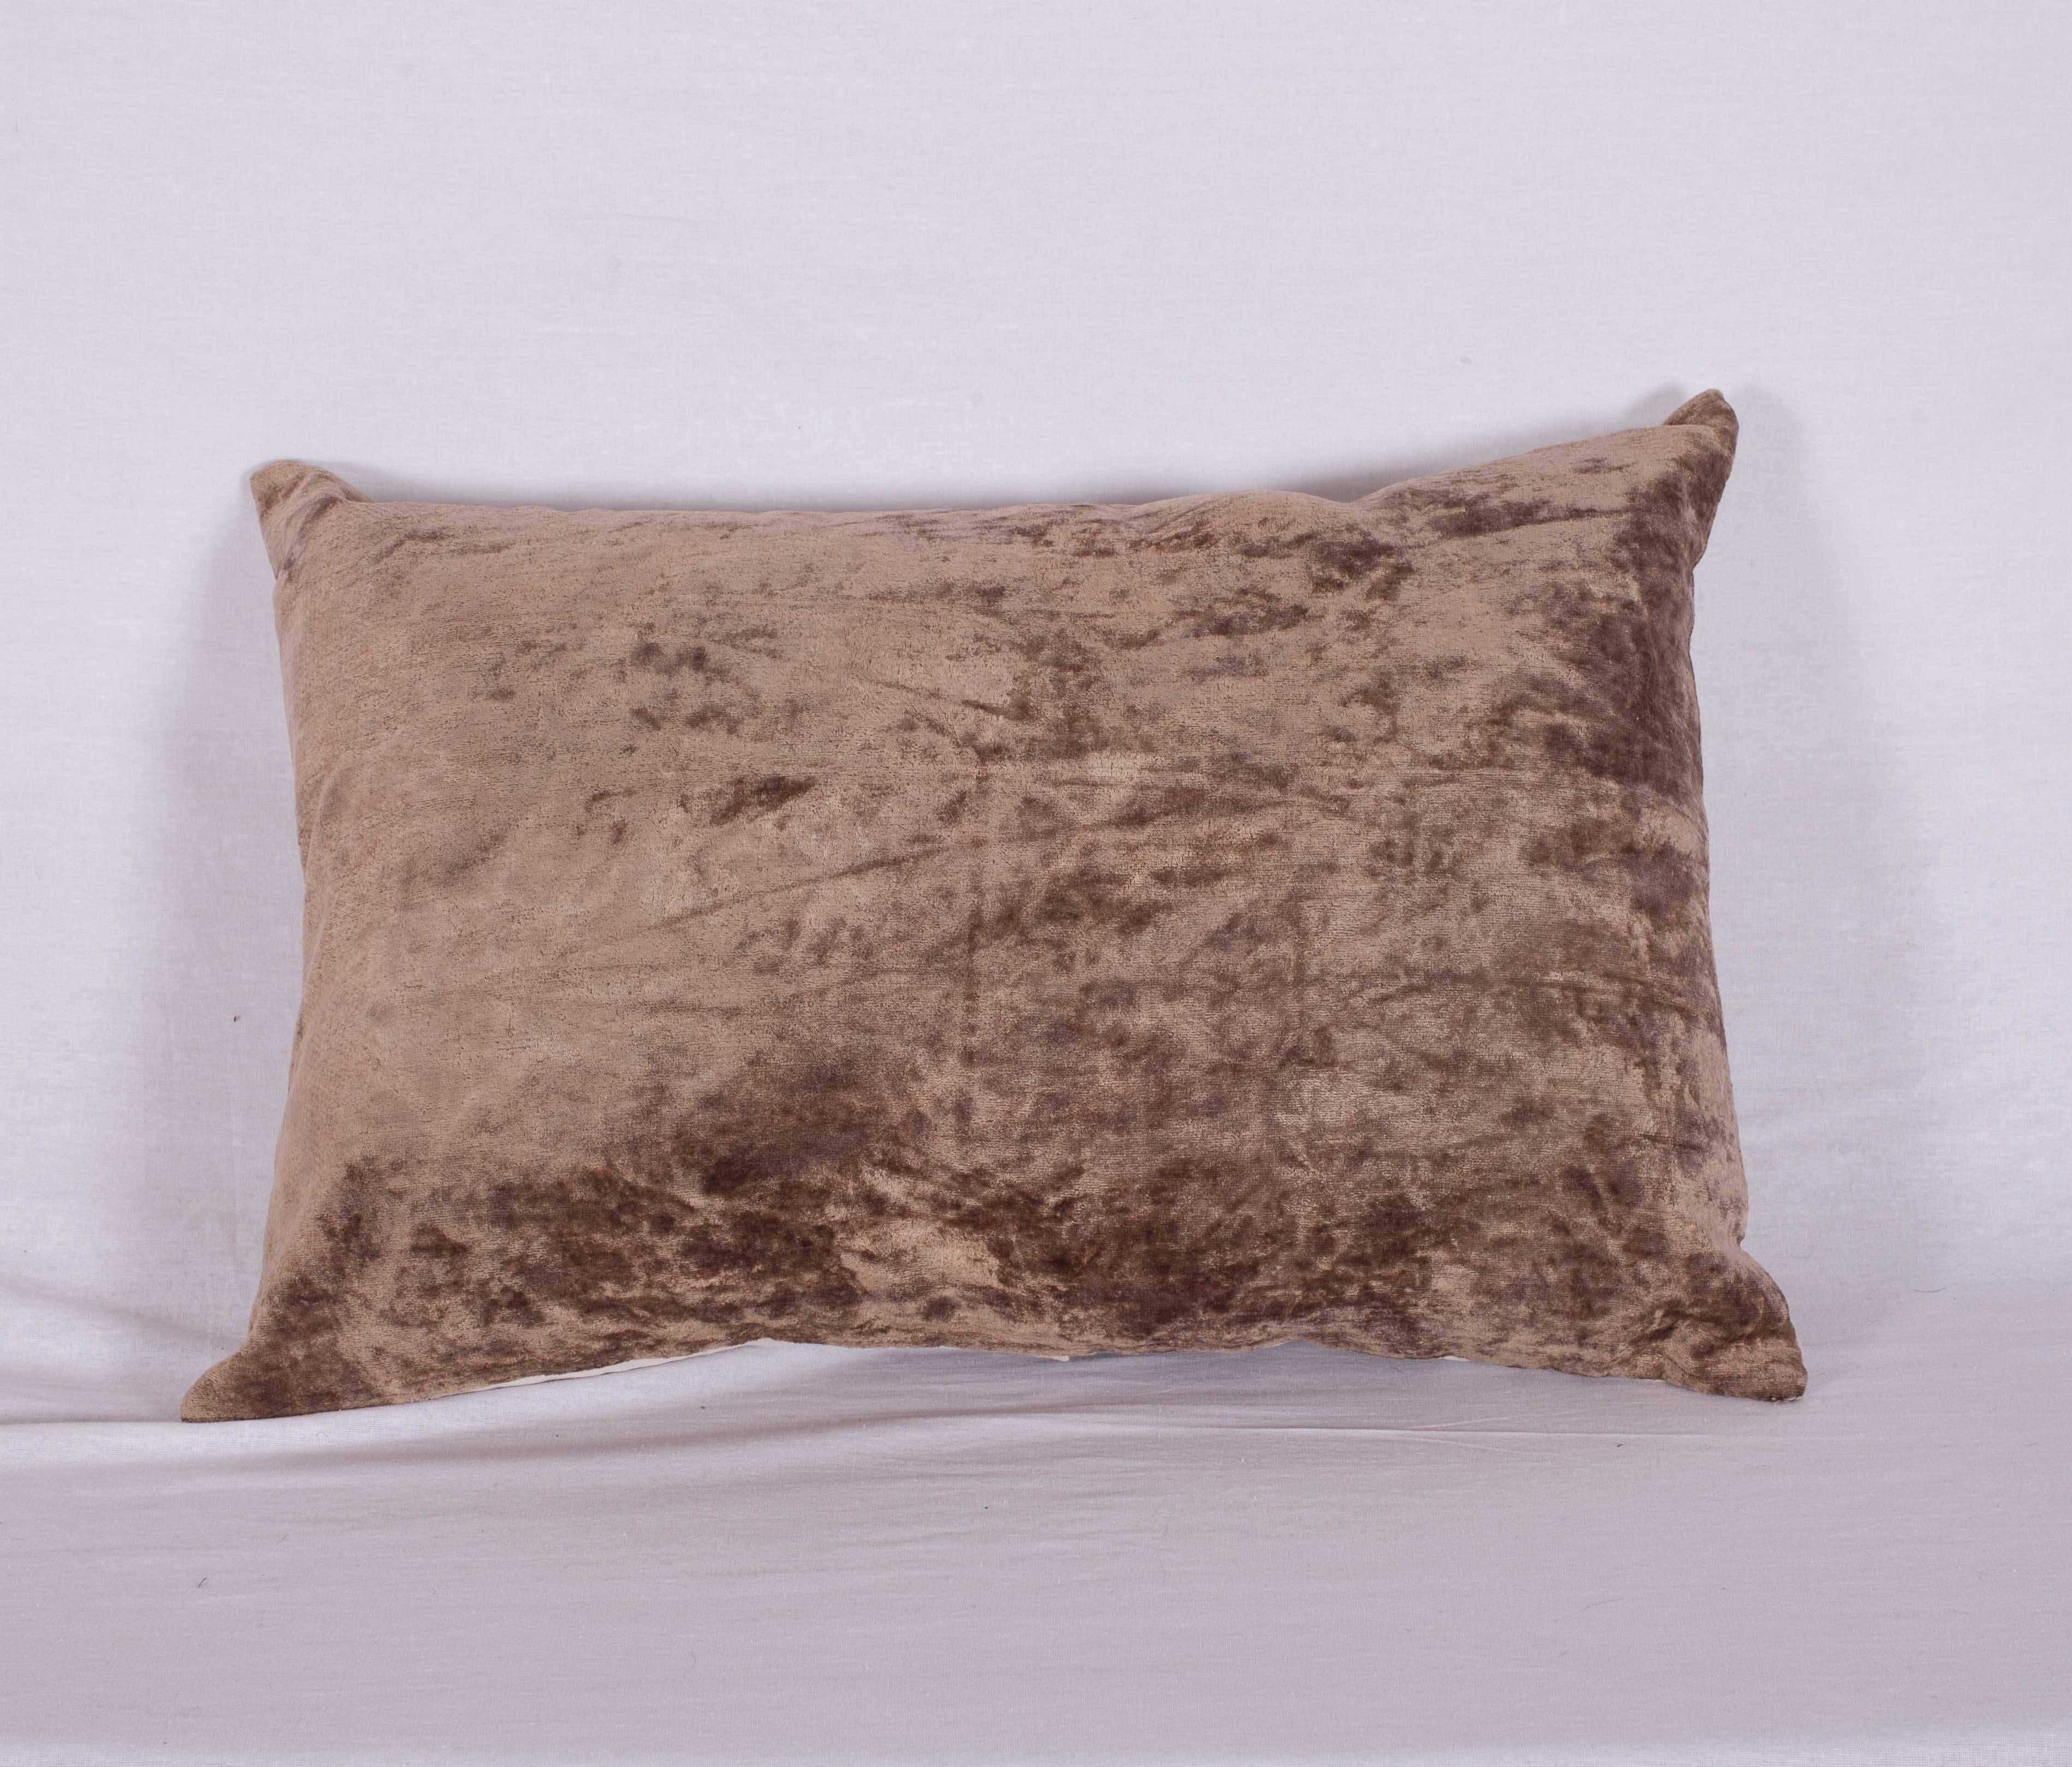 Tribal Pillow Cases Made from Vintage Central Asian Silk Velvet